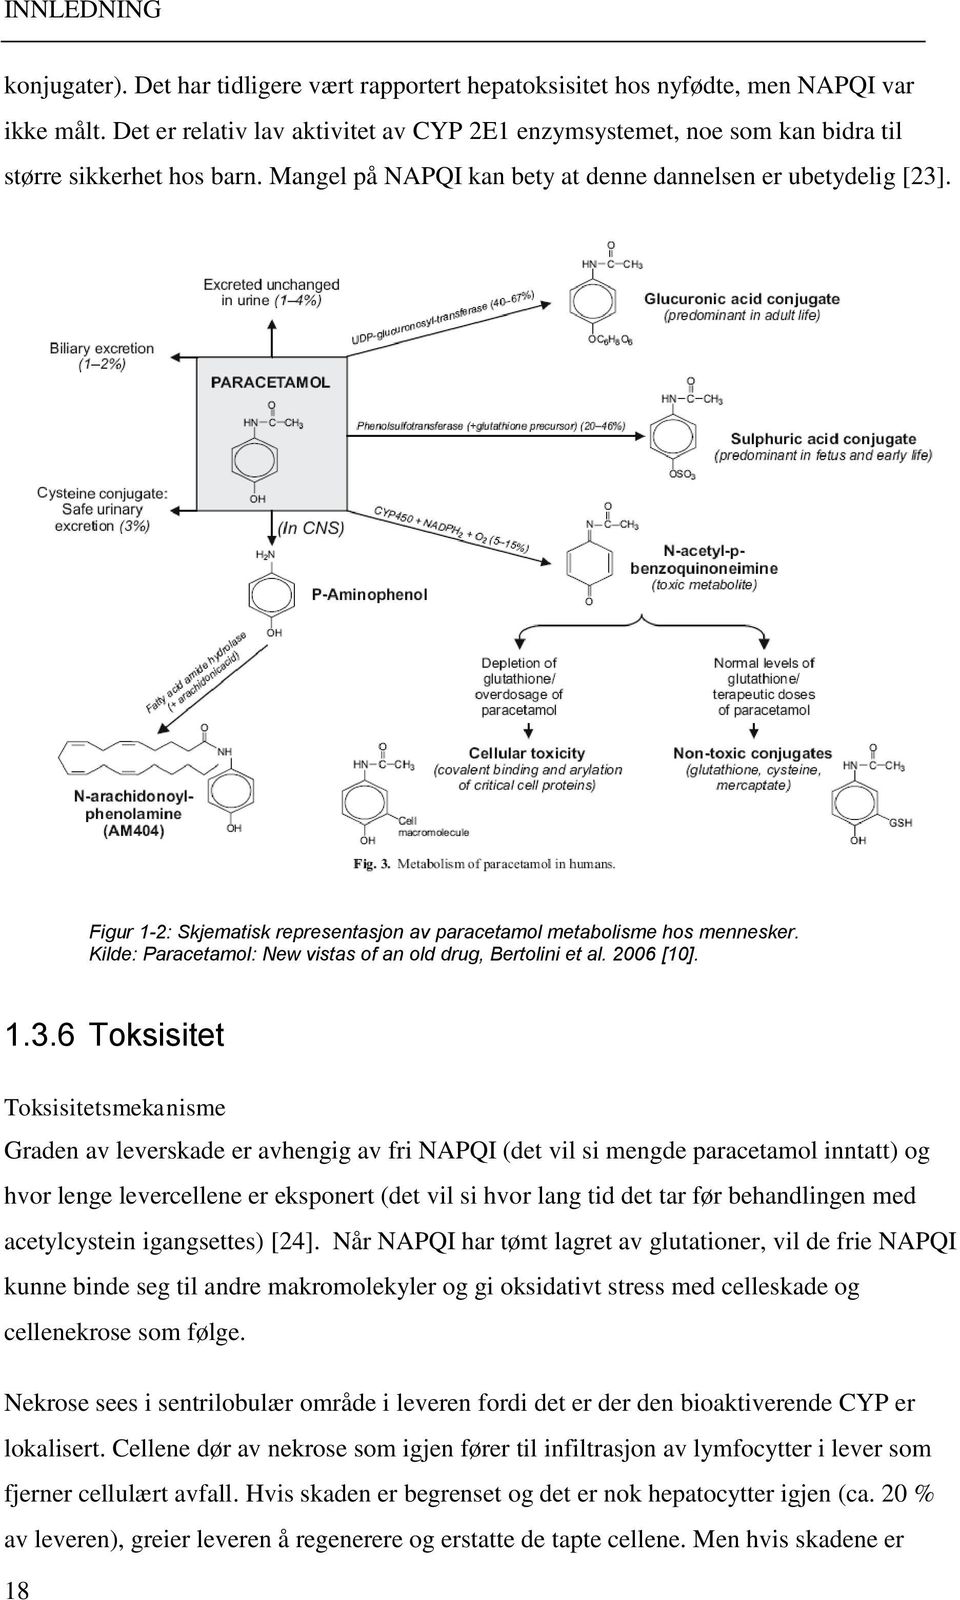 Figur 1-2: Skjematisk representasjon av paracetamol metabolisme hos mennesker. Kilde: Paracetamol: New vistas of an old drug, Bertolini et al. 2006 [10]. 1.3.